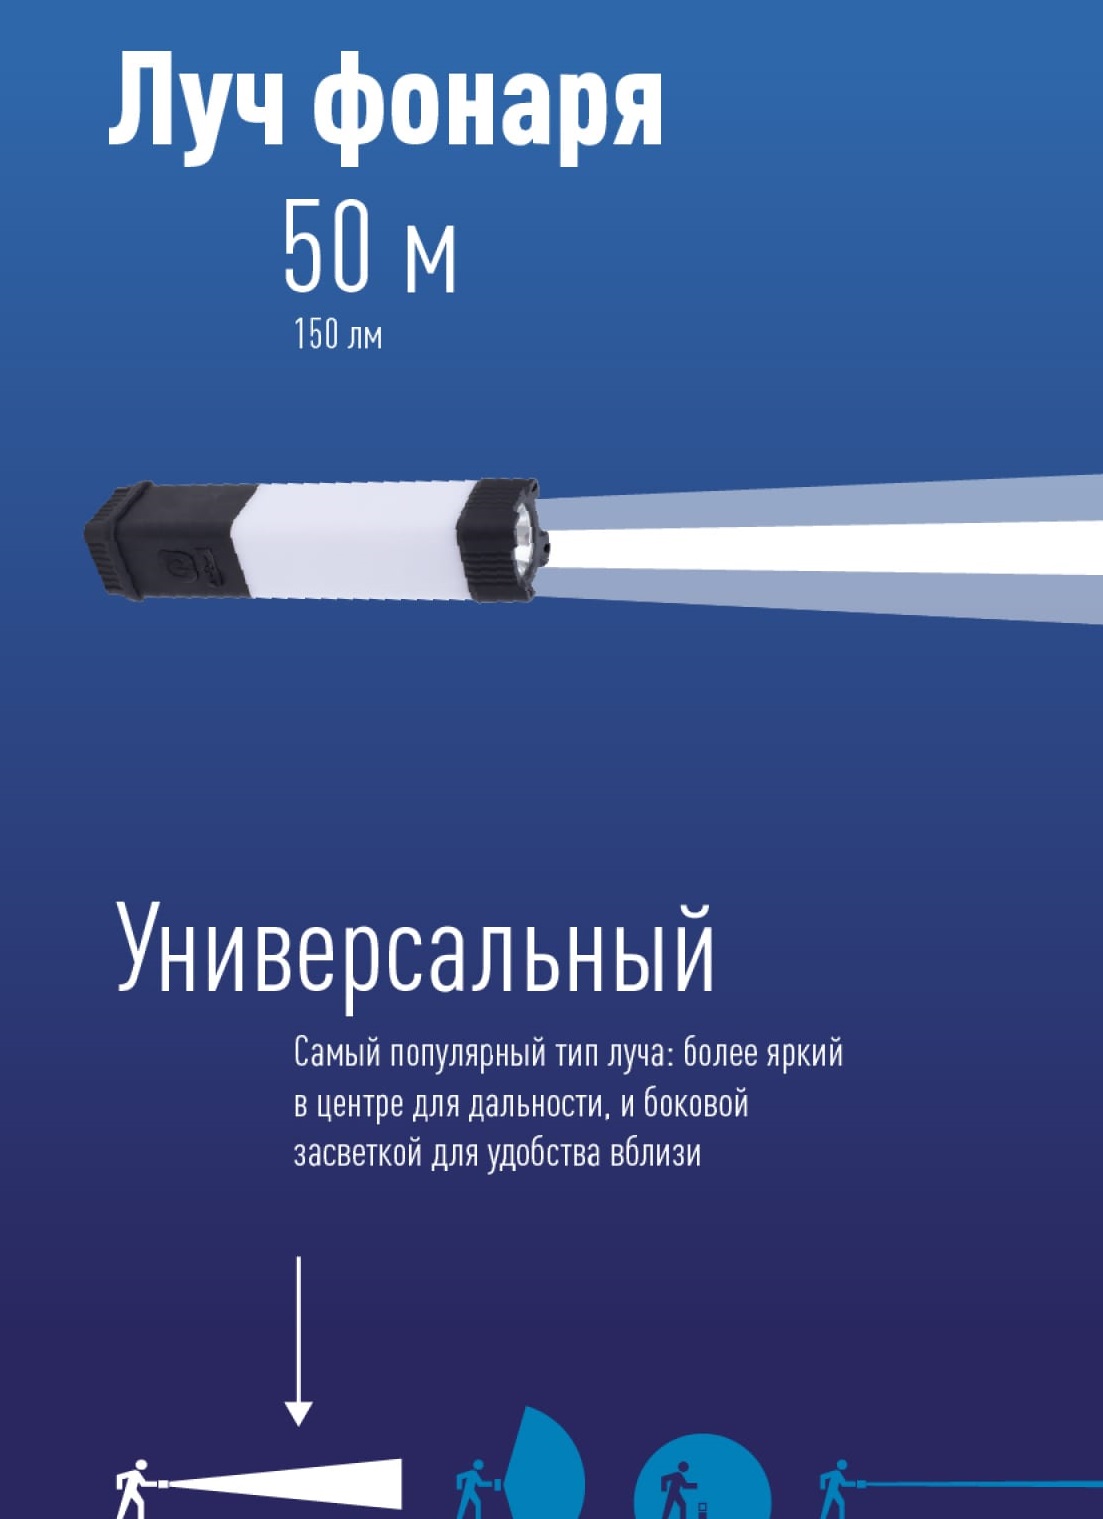 Фонарь КОСМОС Premium KOSAUMP6005 3Вт напр. свет., 24*0,5Вт SMD LED, литий 1200mAh